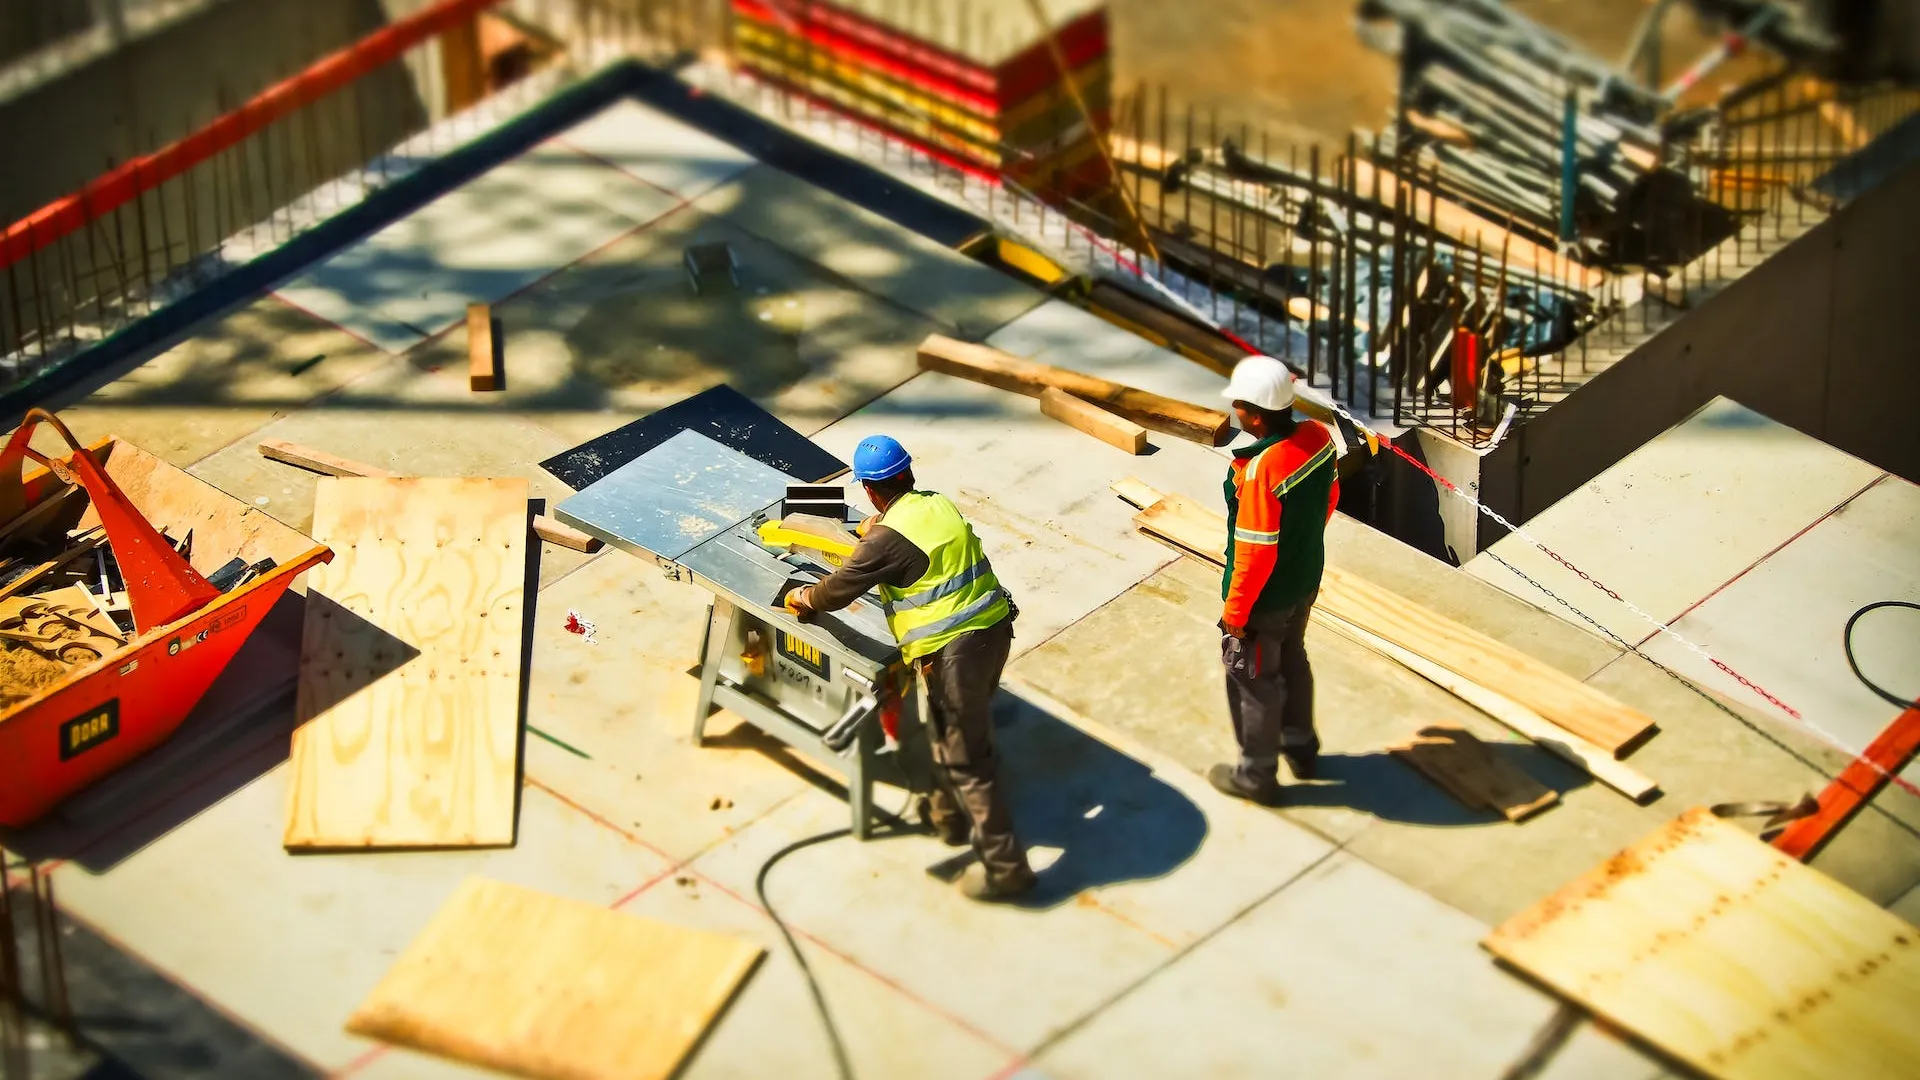 Po krátkém růstu jsou průmysl i stavebnictví opět v minusu